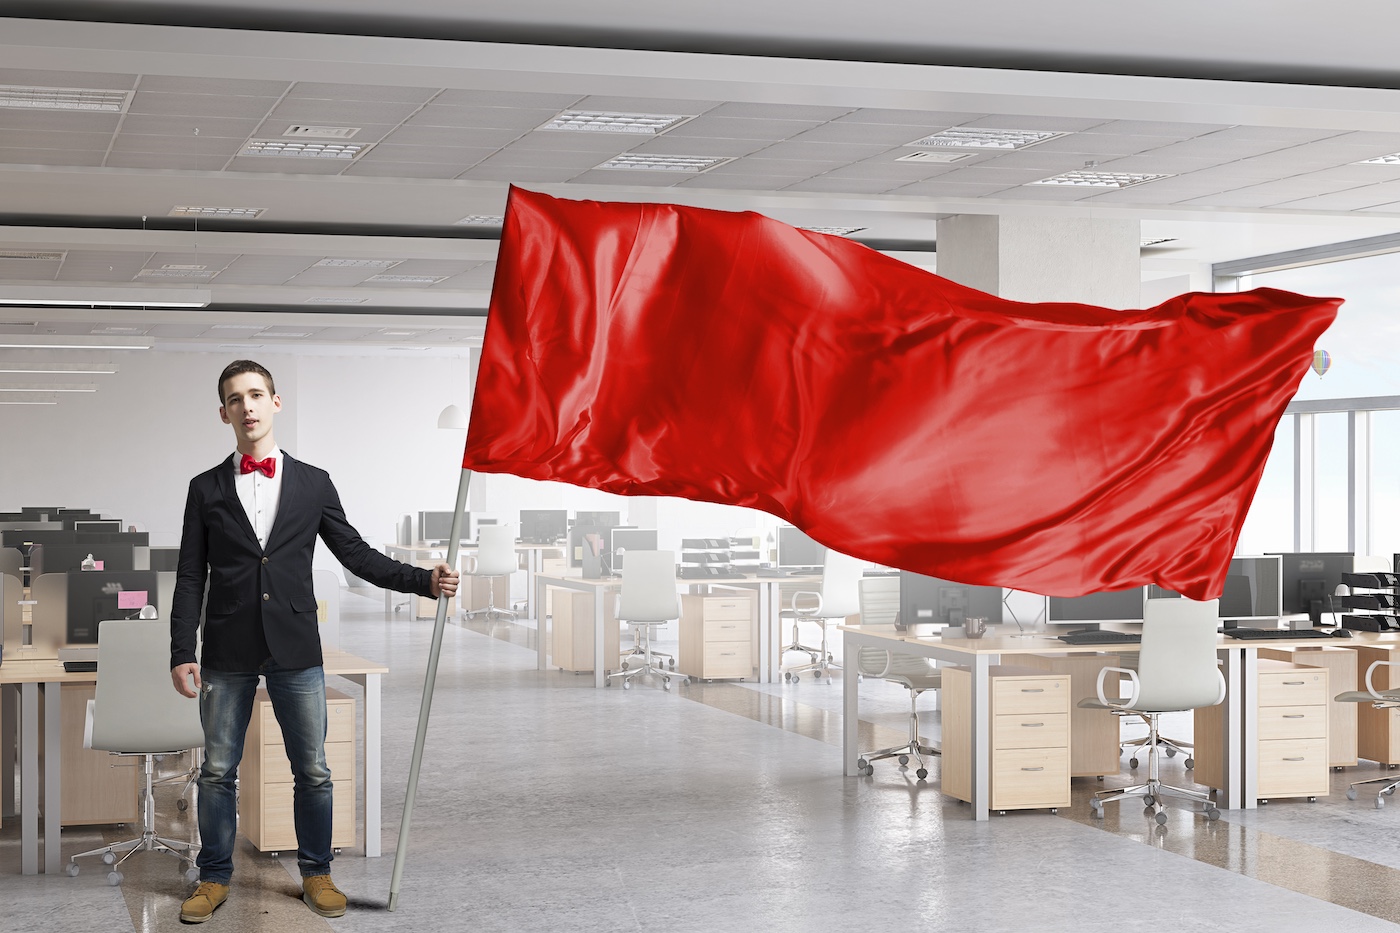 Mann som vifter med rødt flagg ved tomt teknologiselskap